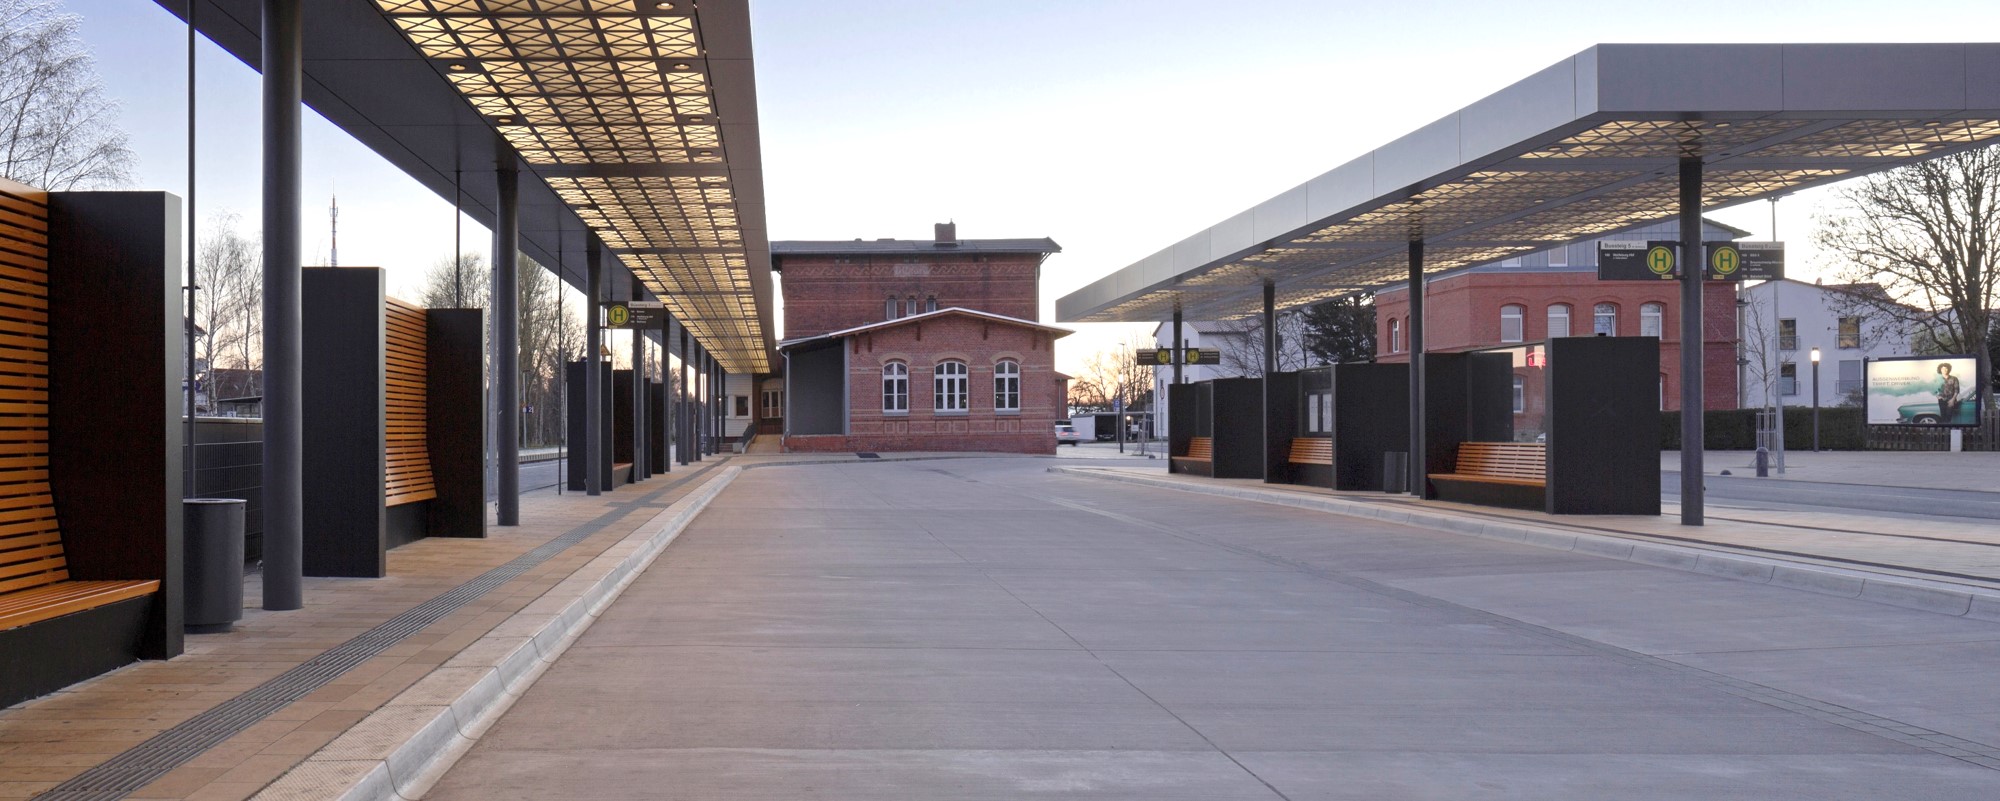 Neue Verknüpfungsstelle Bahnhof Gifhorn Stadt